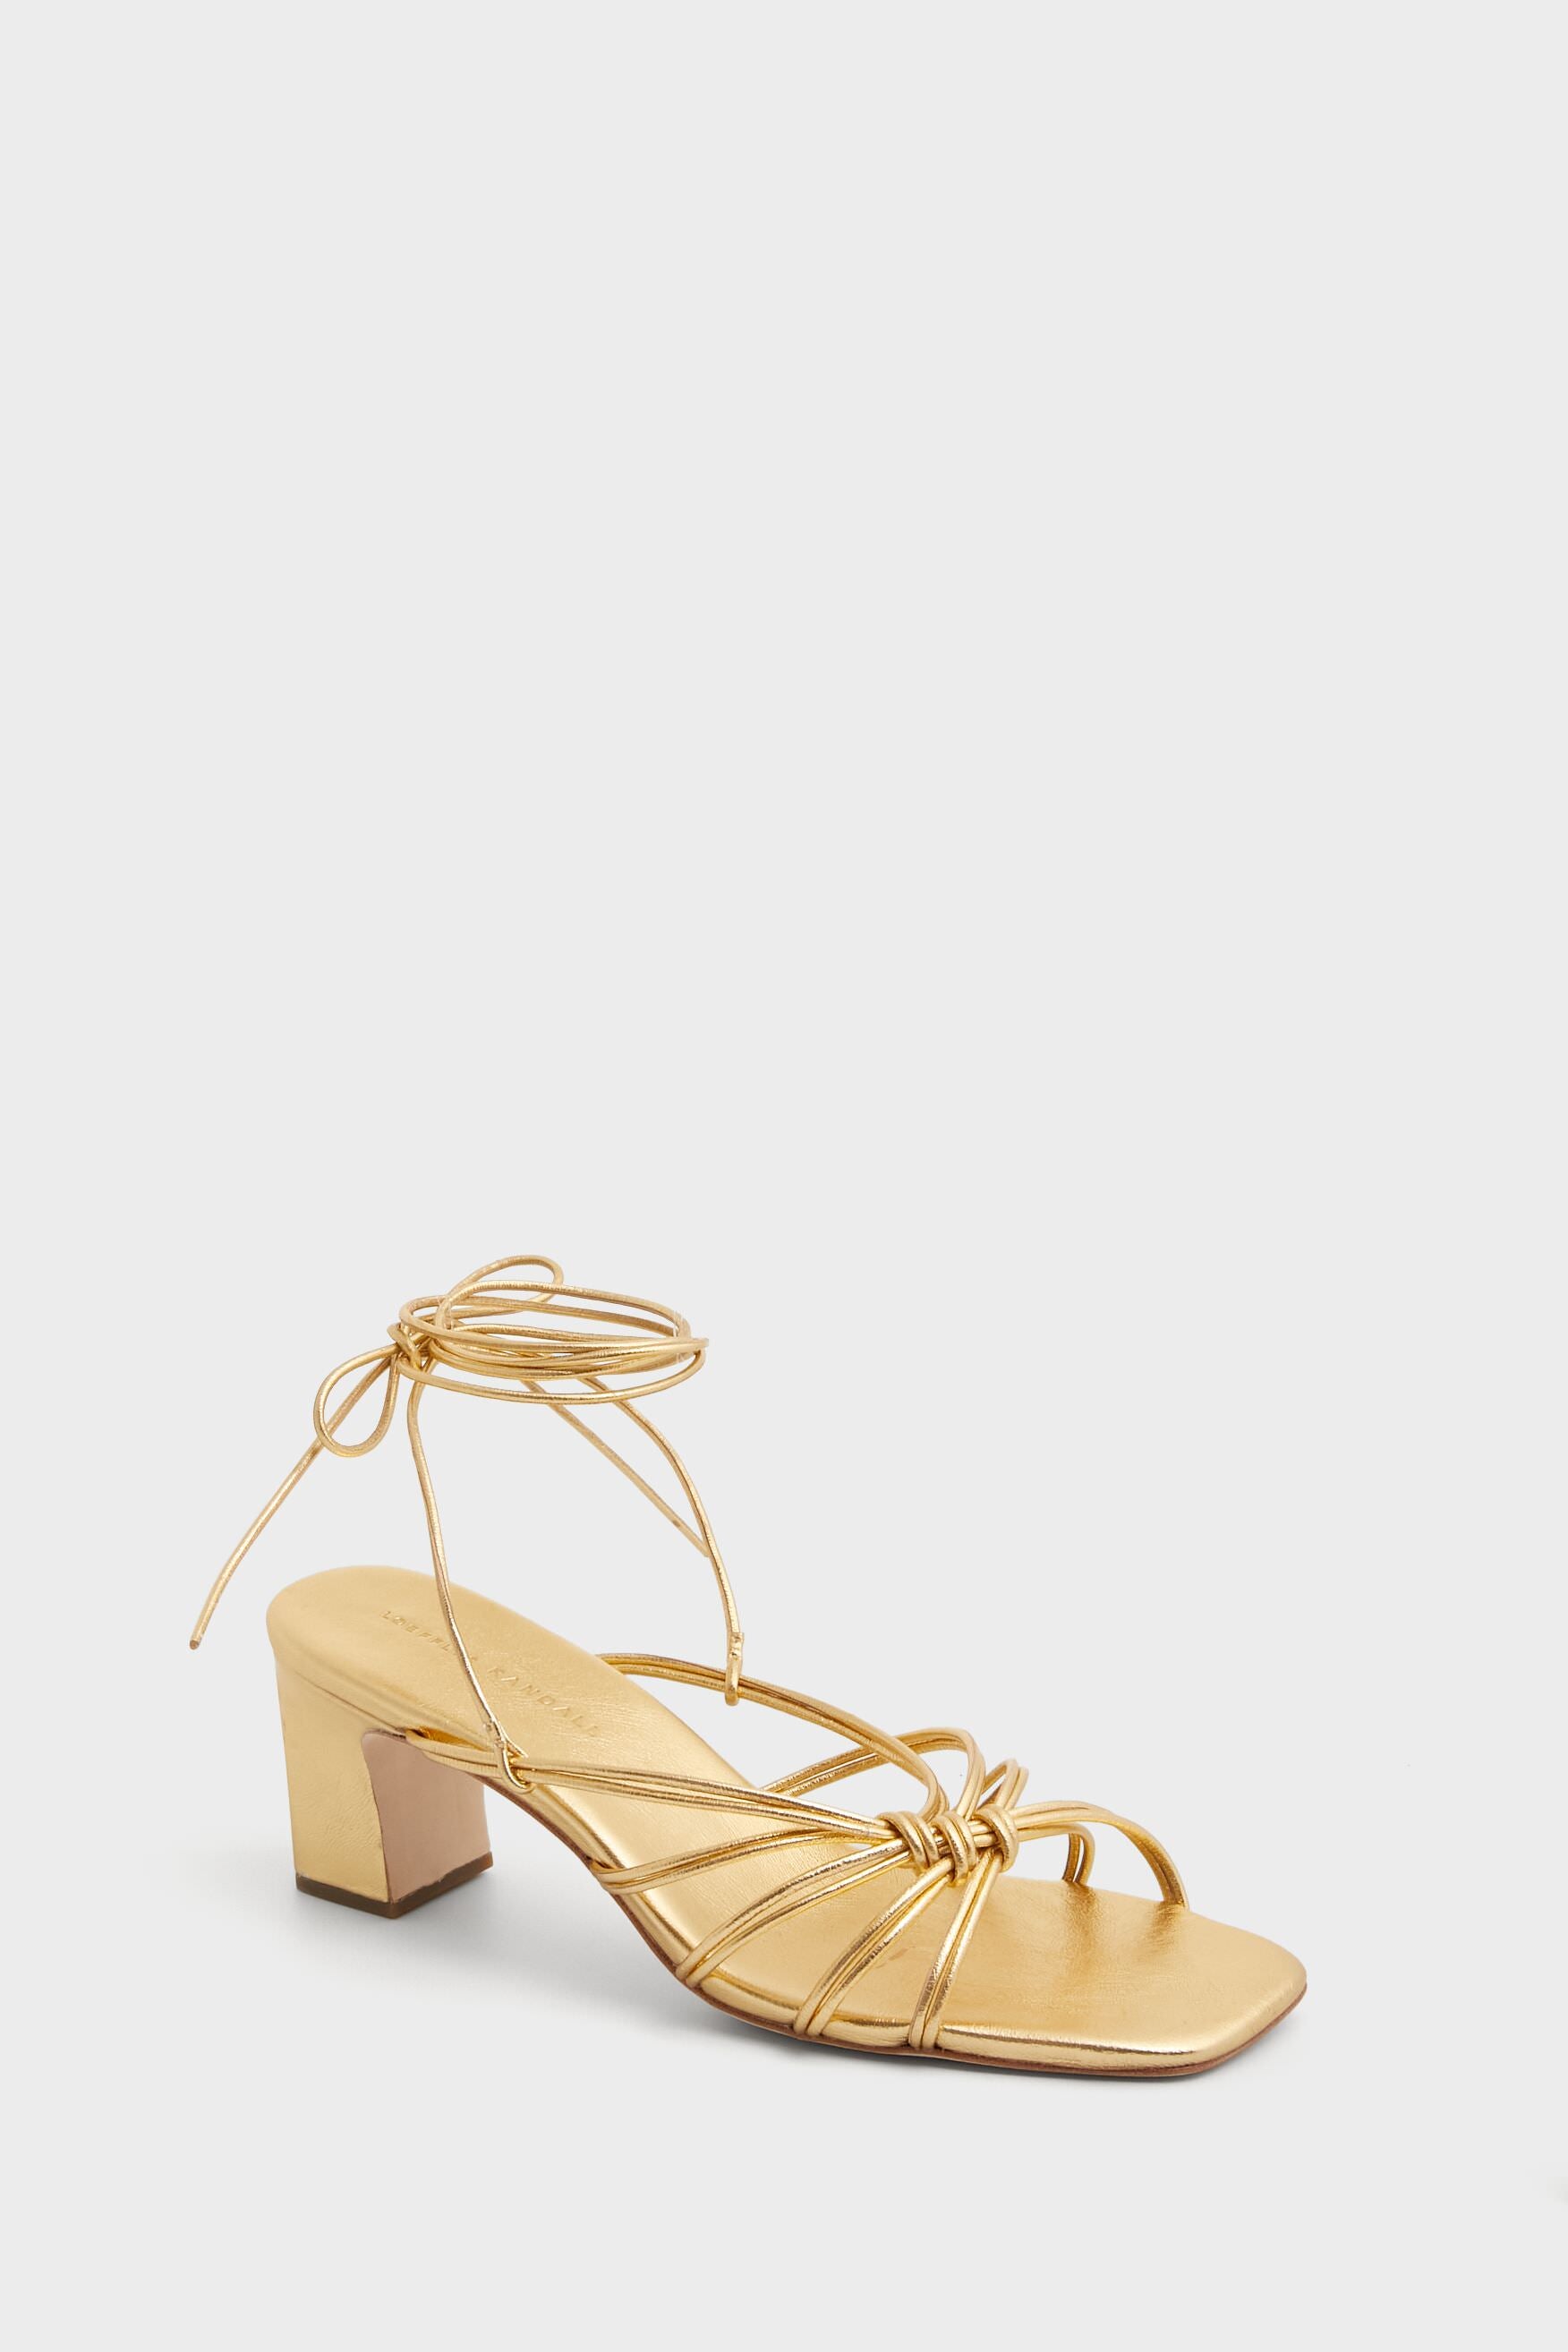 Glitter Block Heels in Yellow | Heels, Block heels, Yellow shoes